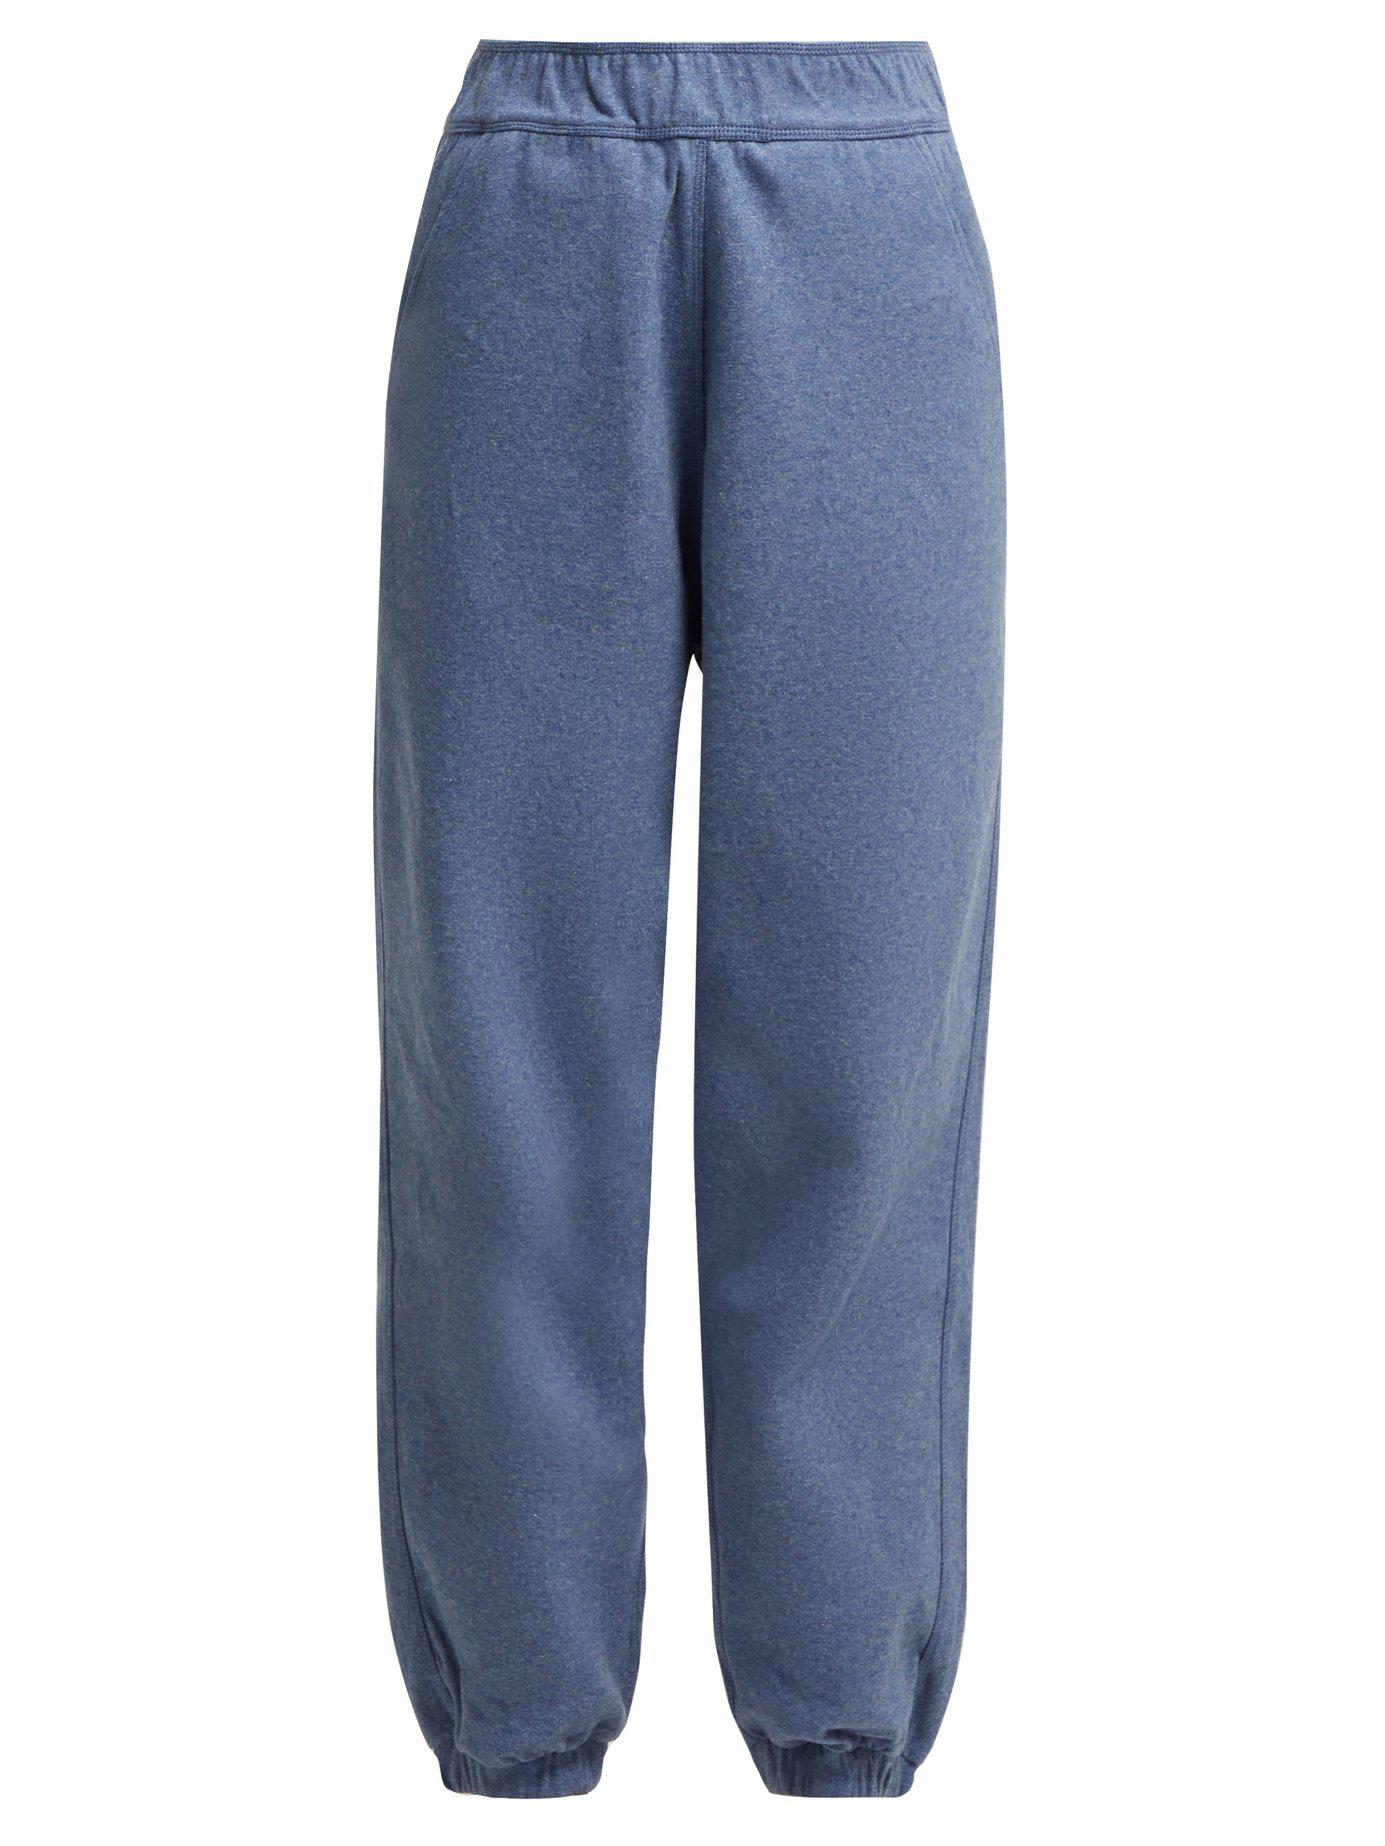 Lyst - Lndr Dupla Technical Fleece Jersey Track Pants in Blue